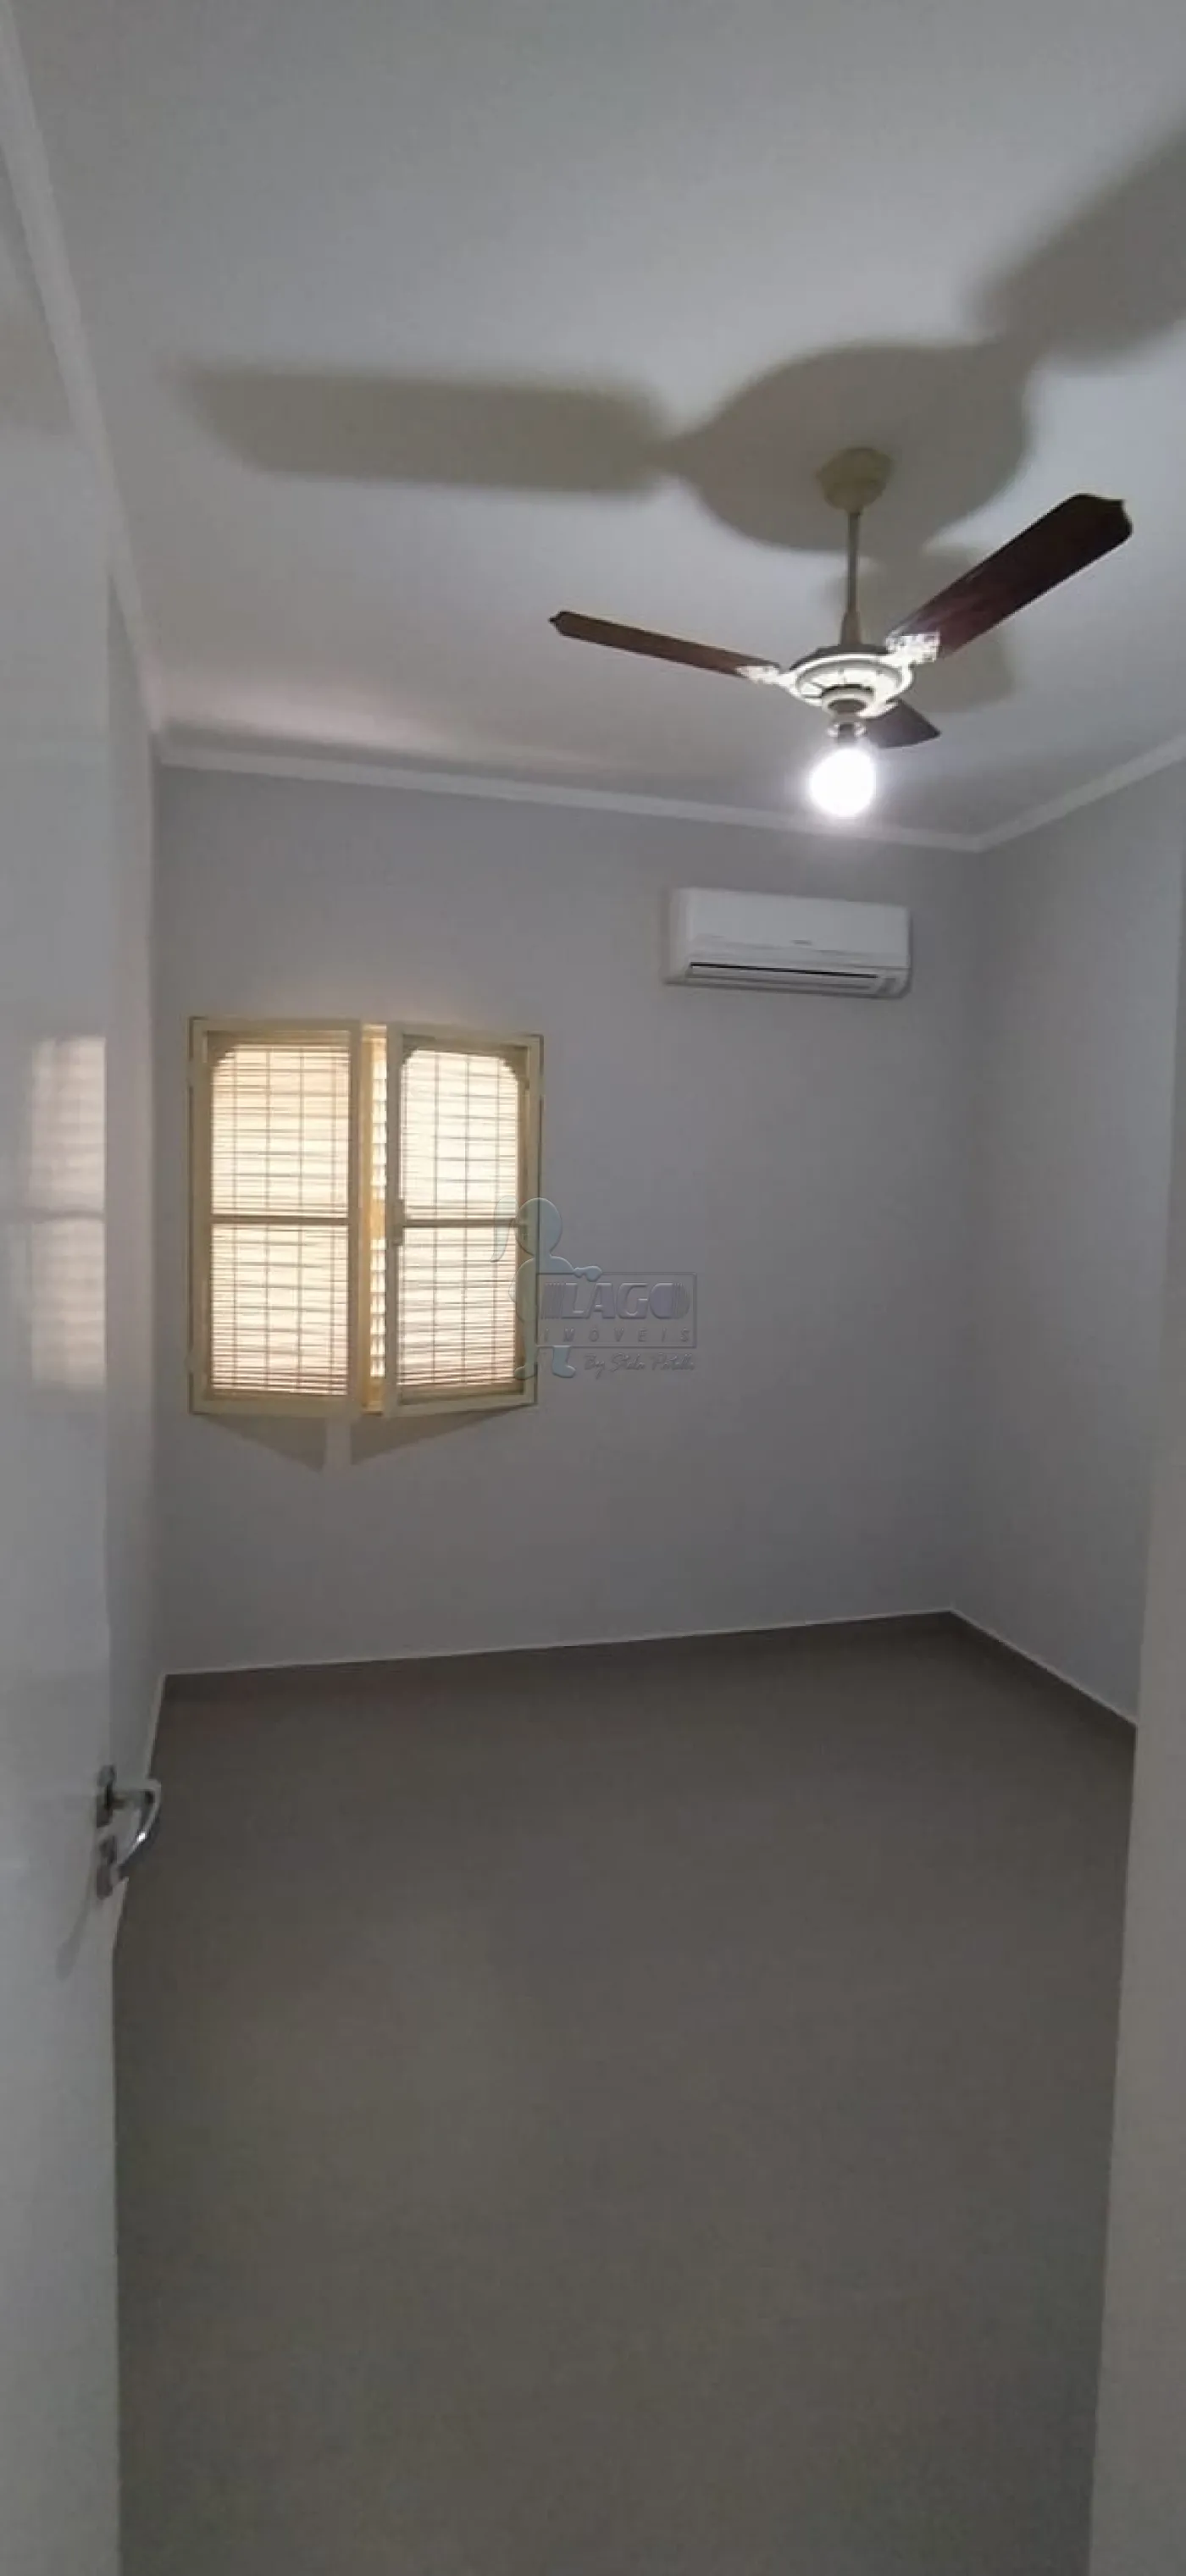 Comprar Apartamentos / Padrão em Ribeirão Preto R$ 290.000,00 - Foto 12